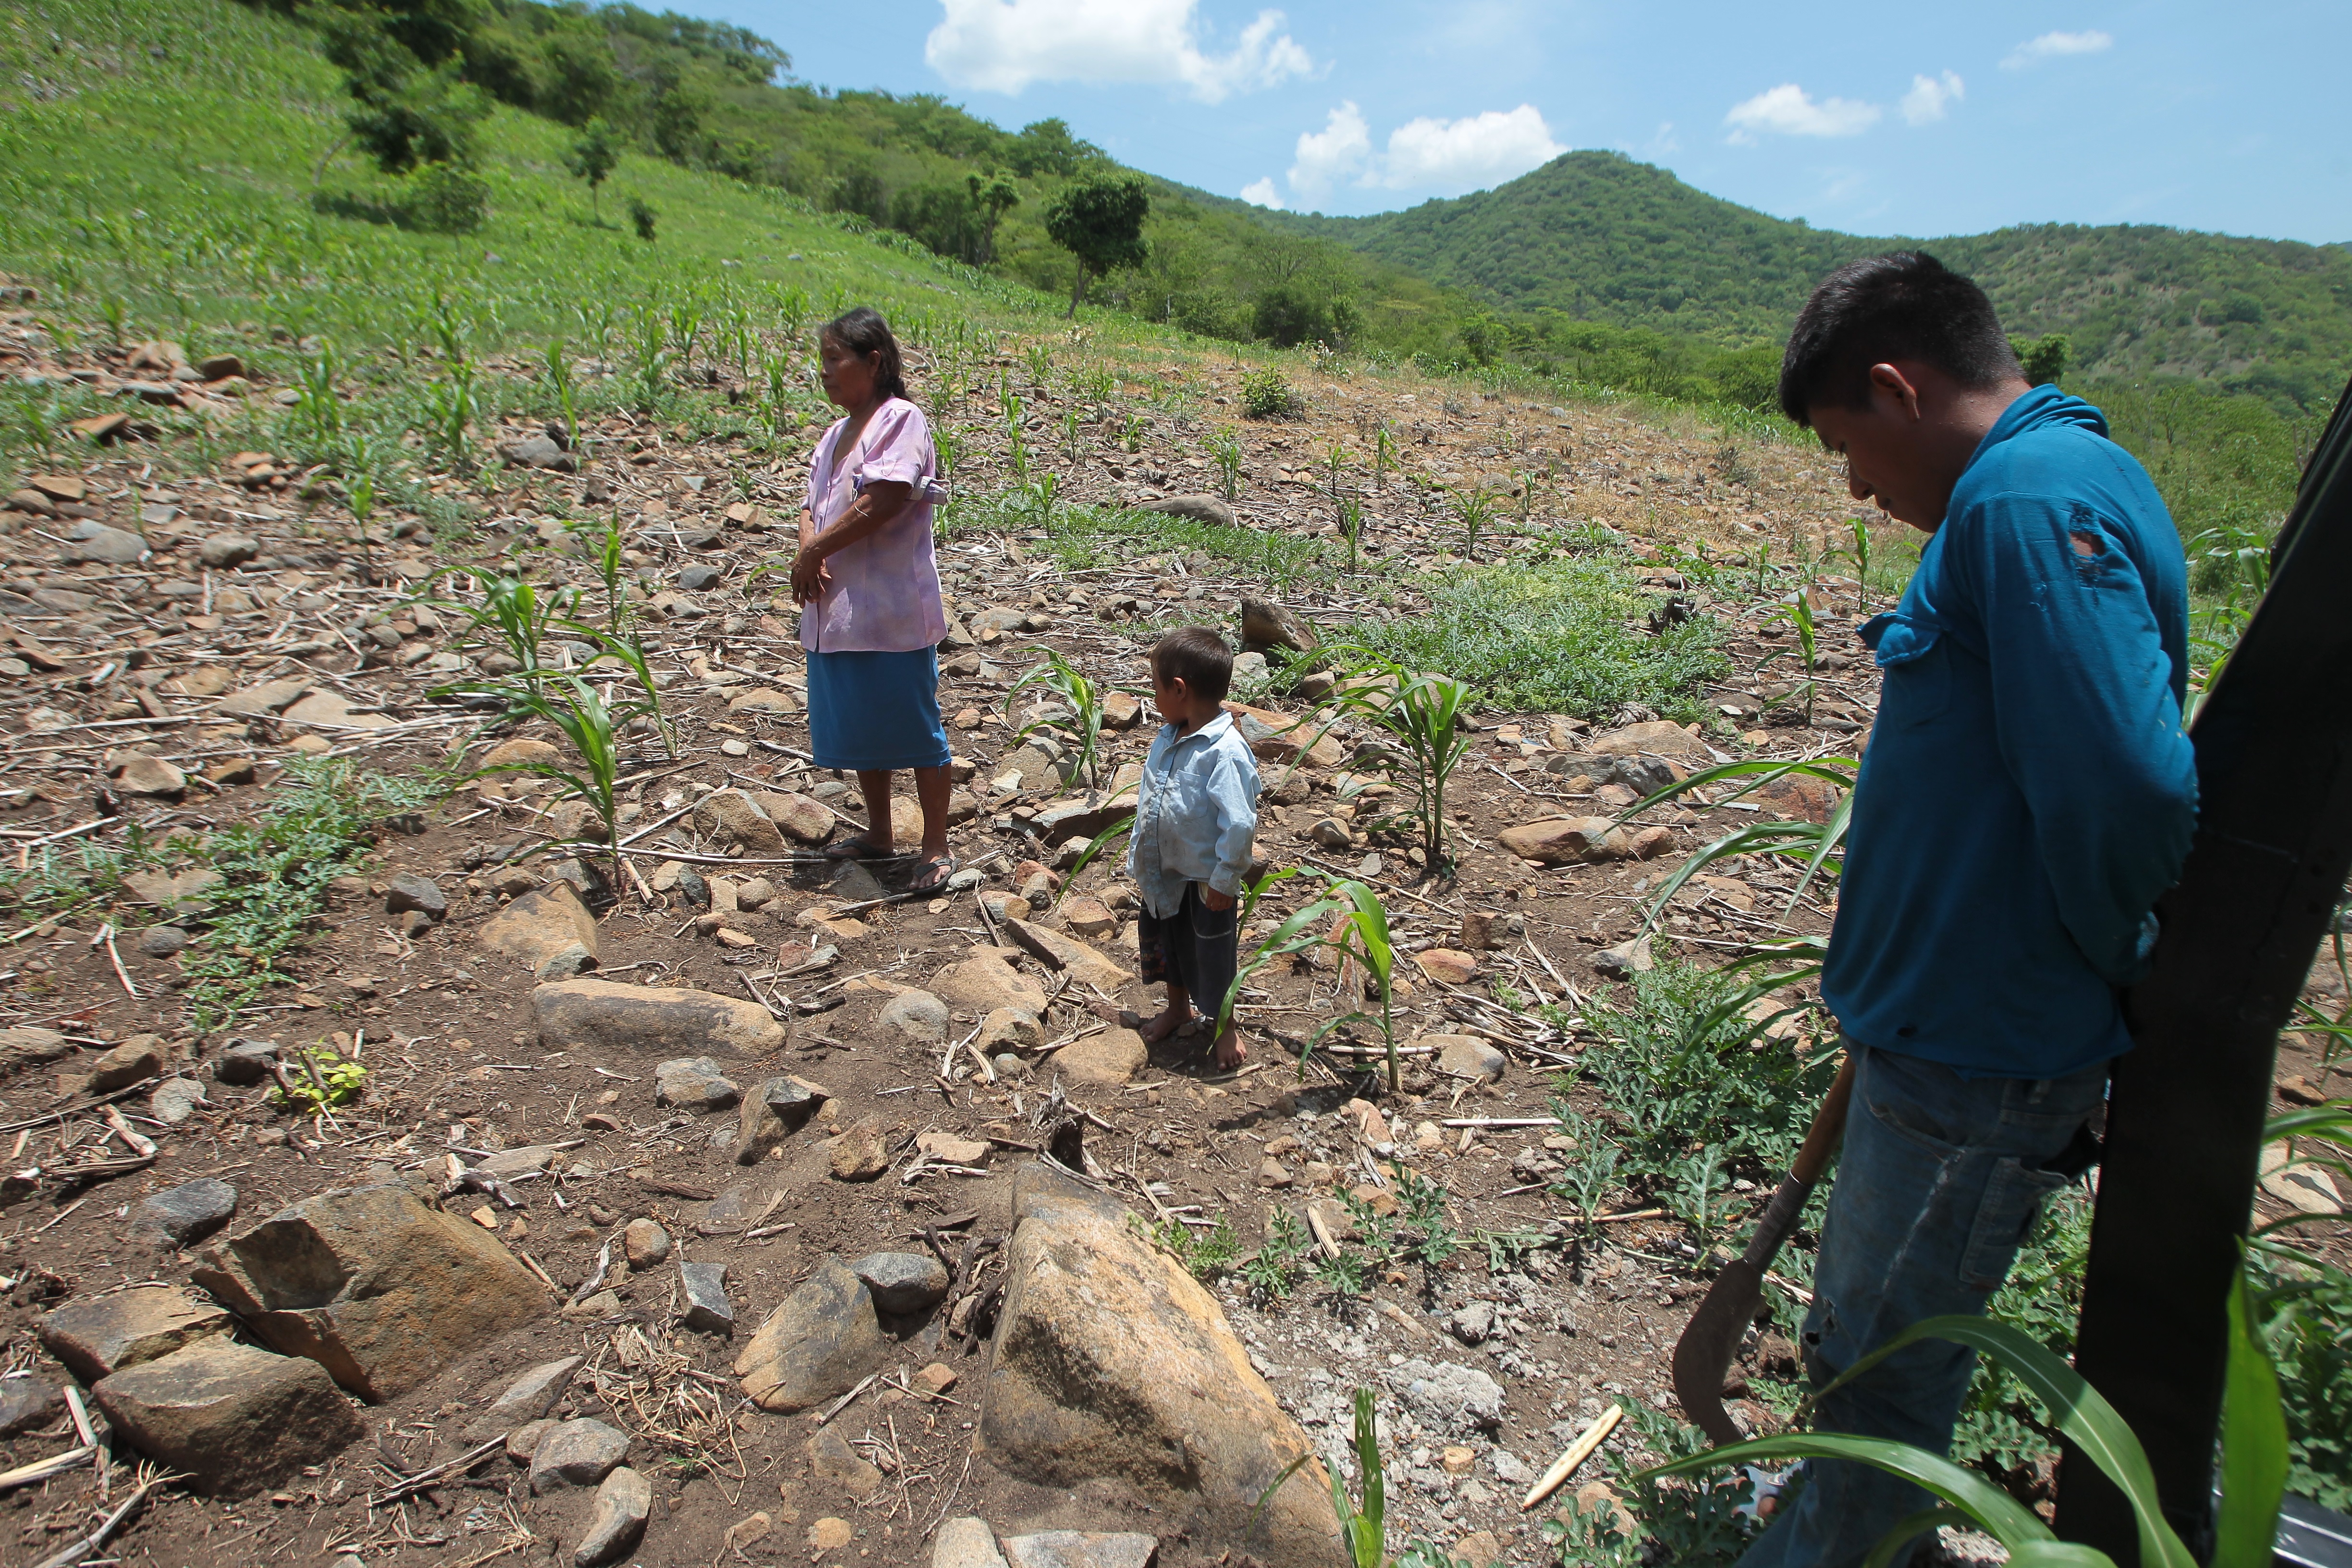 Imagen de referencia. La falta de lluvia impacta en el crecimiento de la milpa, lo cual preocupa a las familias de subsistencia. (Foto Prensa Libre: Hemeroteca PL)